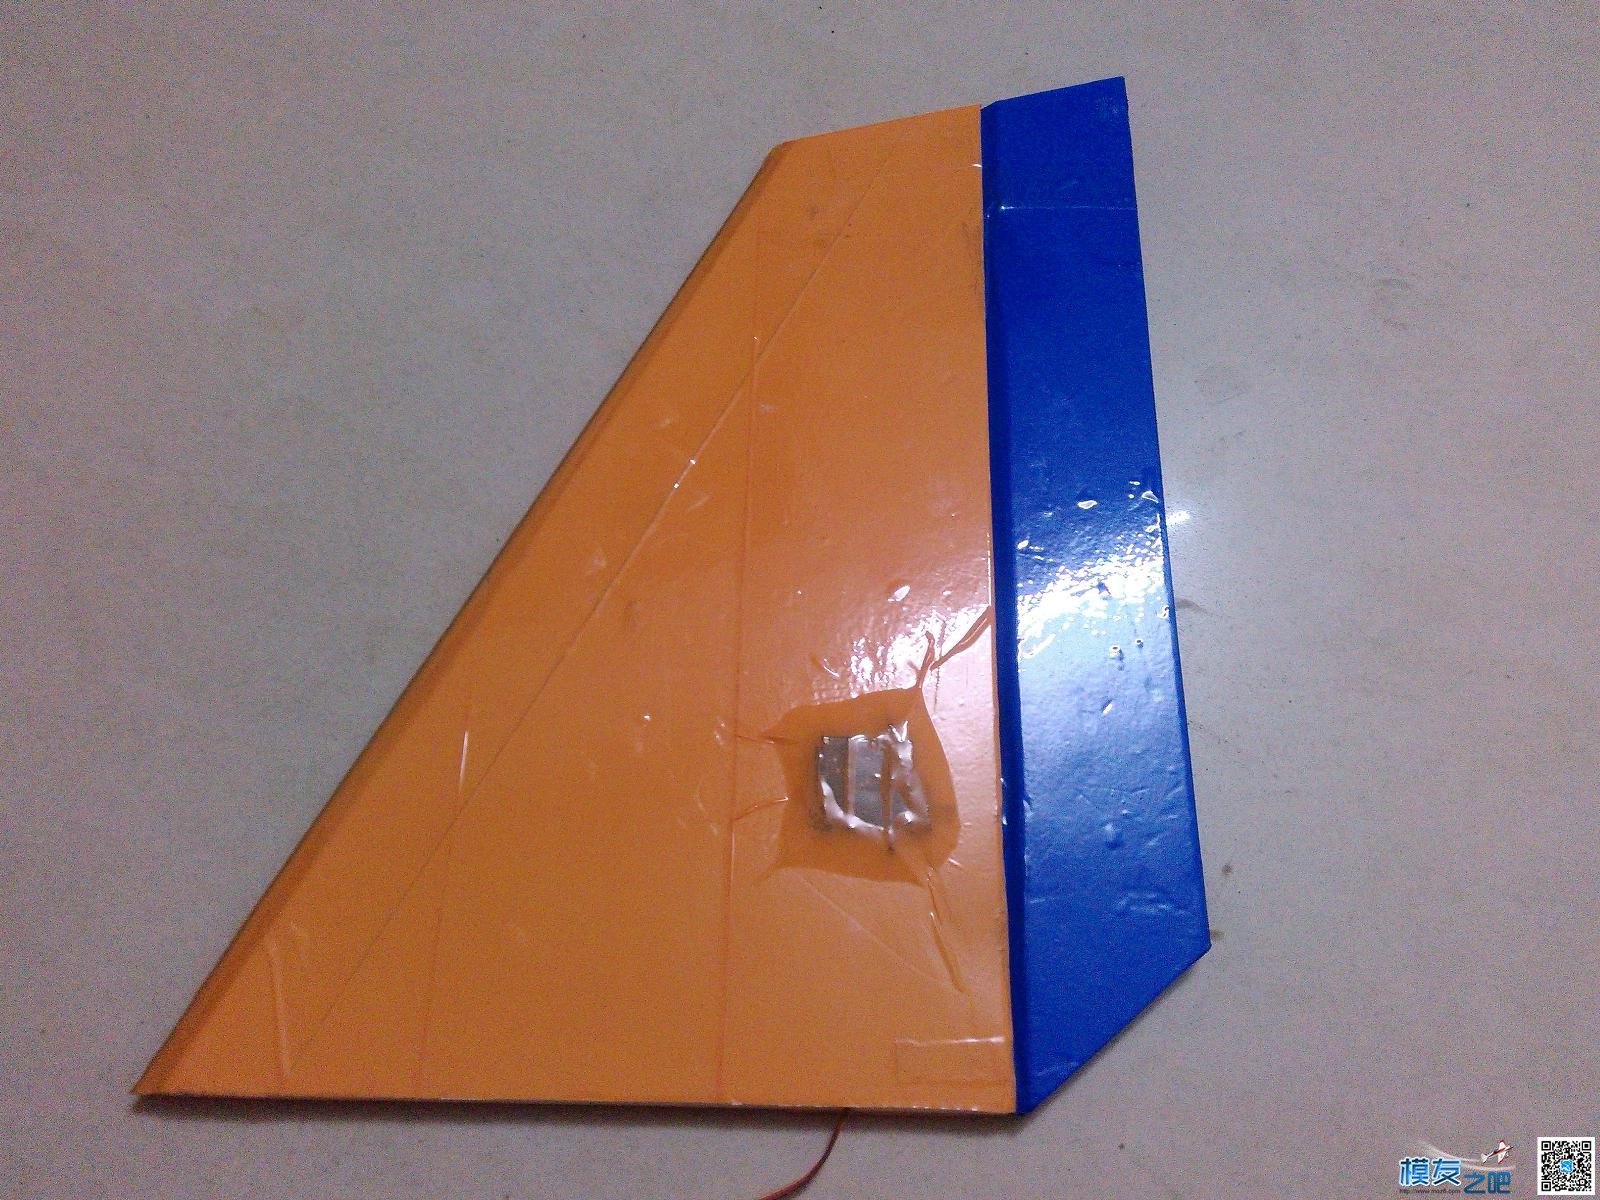 用瓶子折纸法制作滑翔机机头机身。已完成。老鸟别笑。.... 碳纤维,滑翔机,制作,专业 作者:cyb2688 1193 